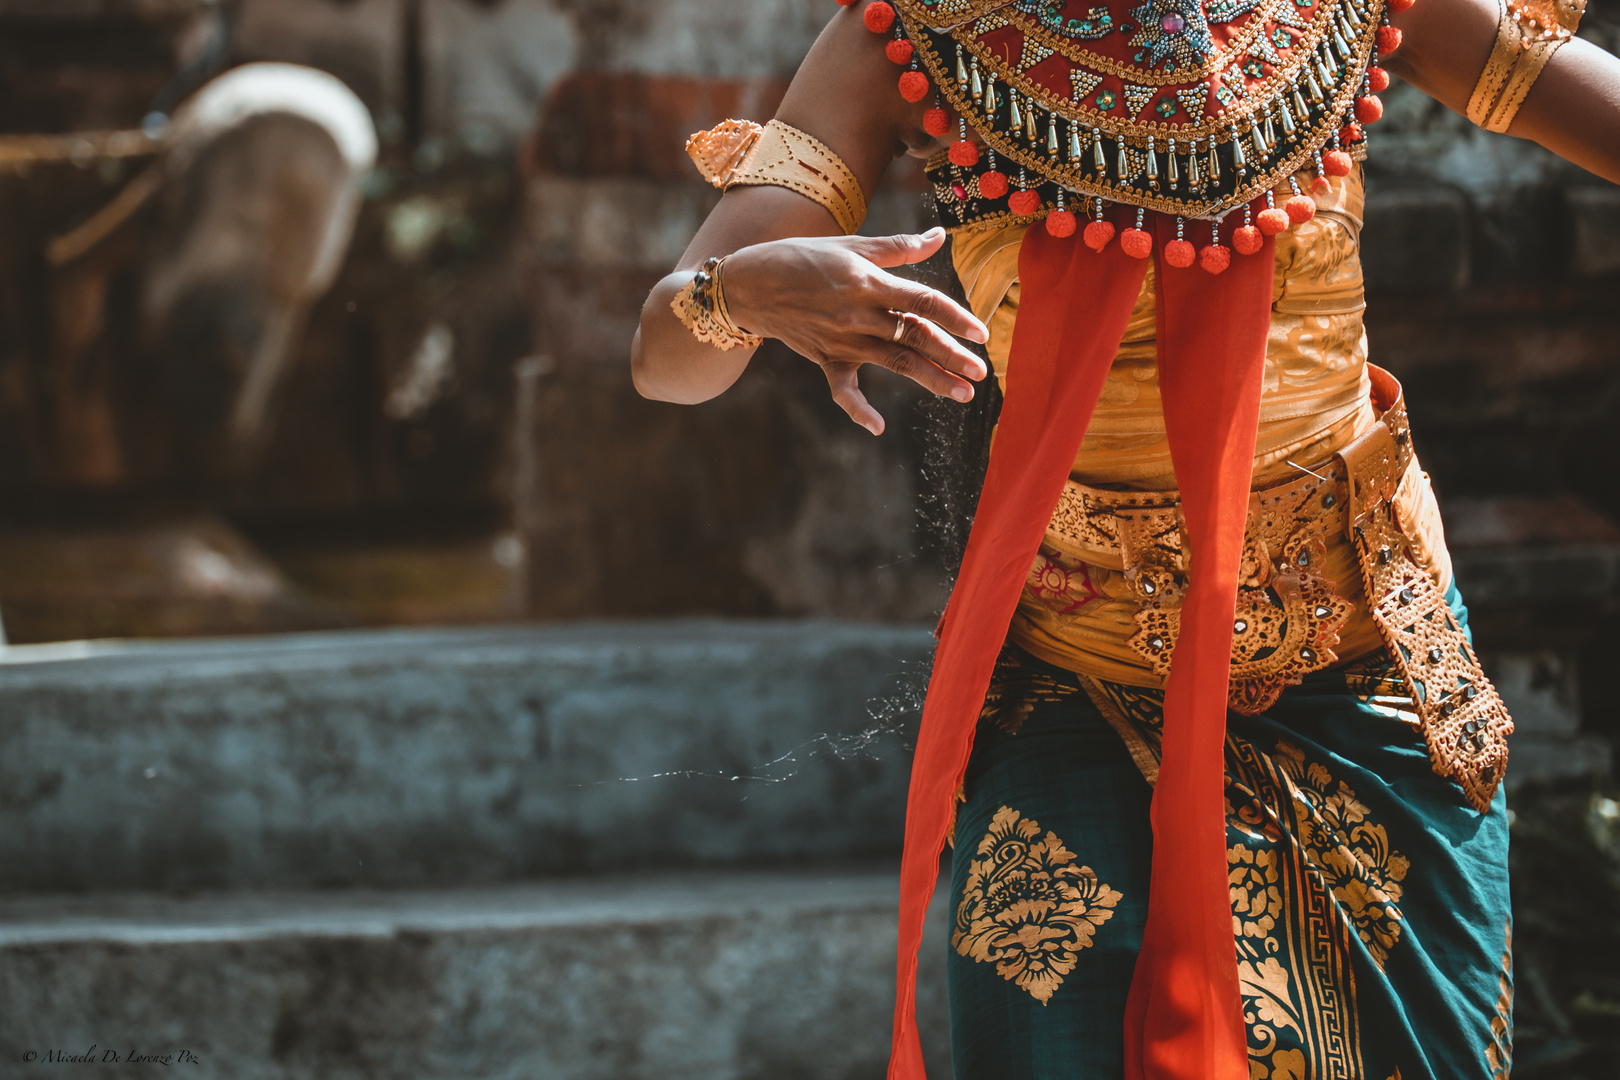 Balinese Barong Dance, detail